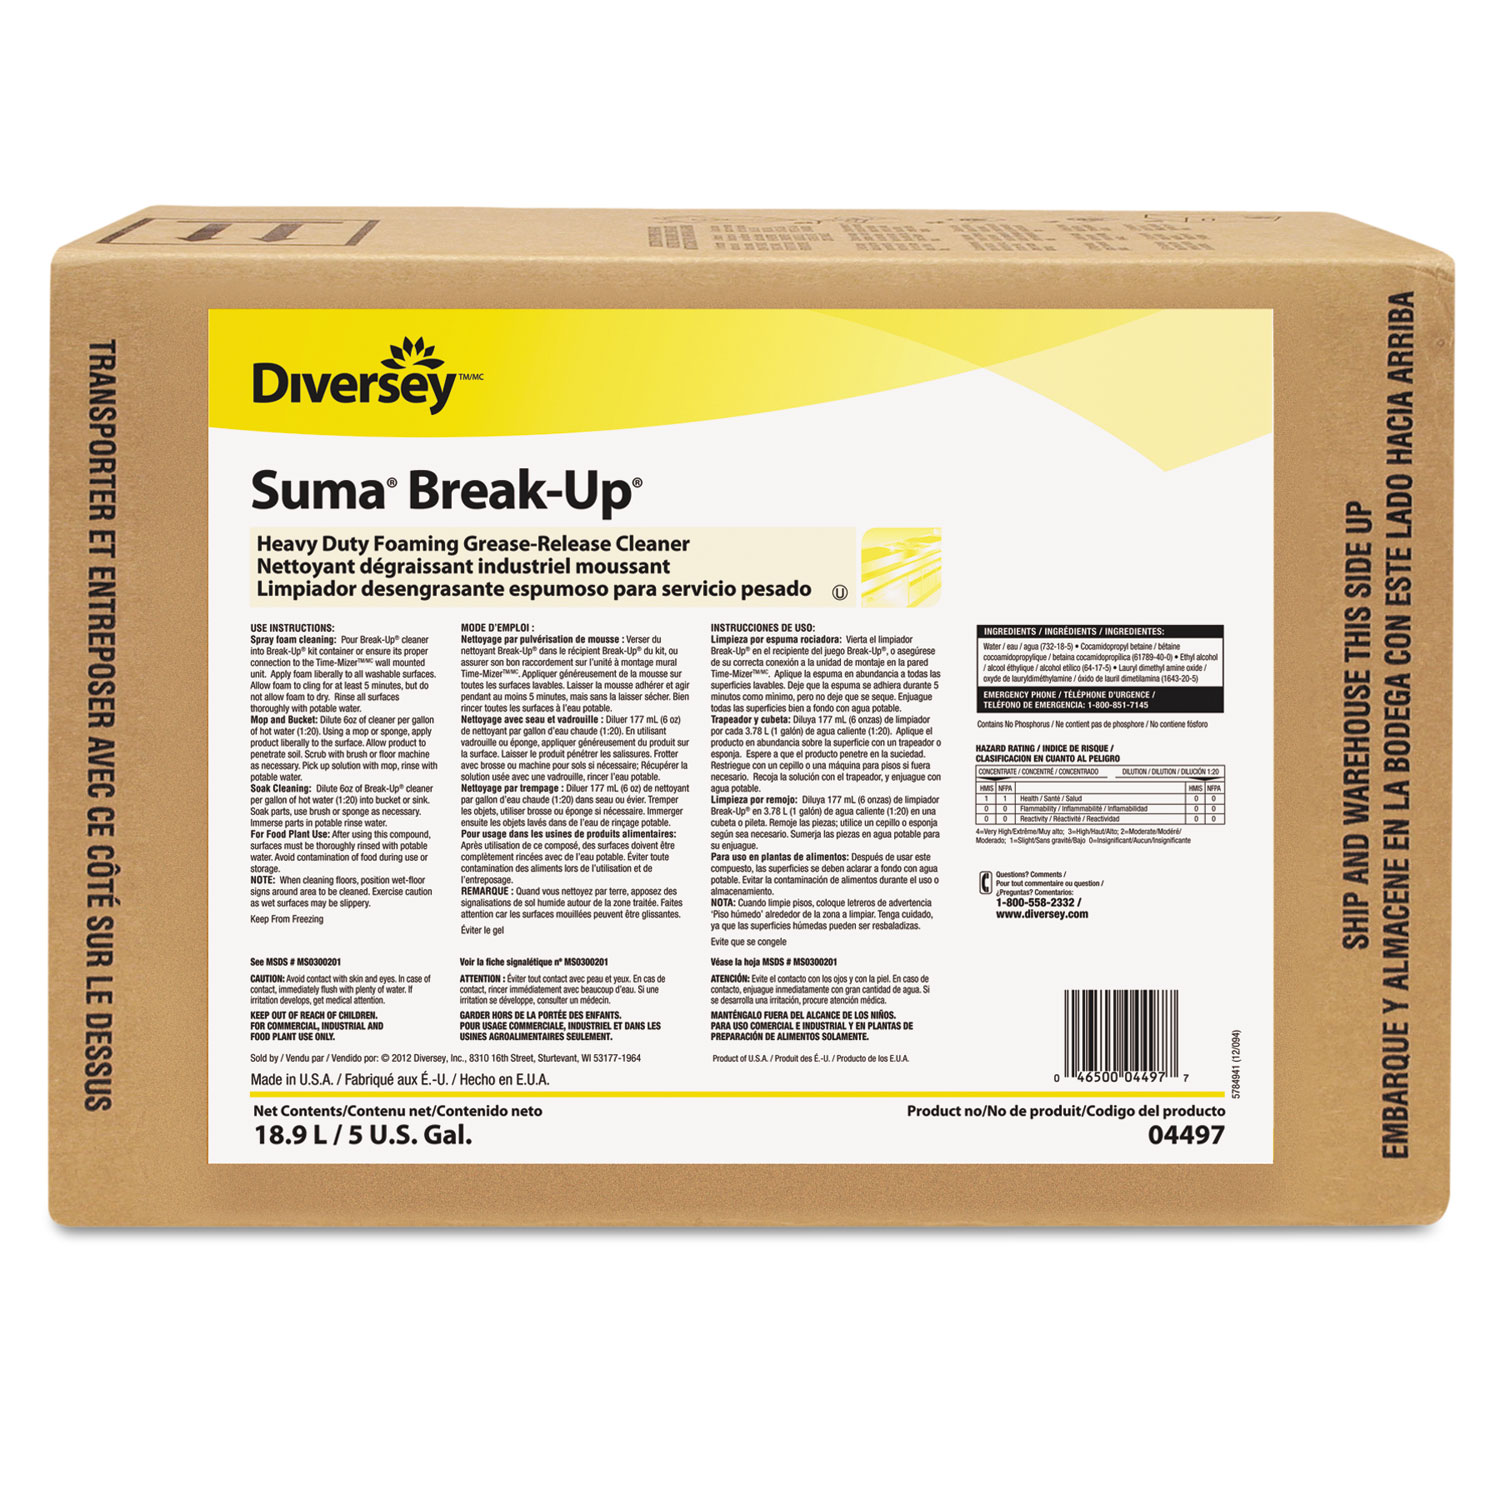 Suma Break-Up Heavy Duty Foaming Grease-Release Cleaner, 5 gal Envirobox